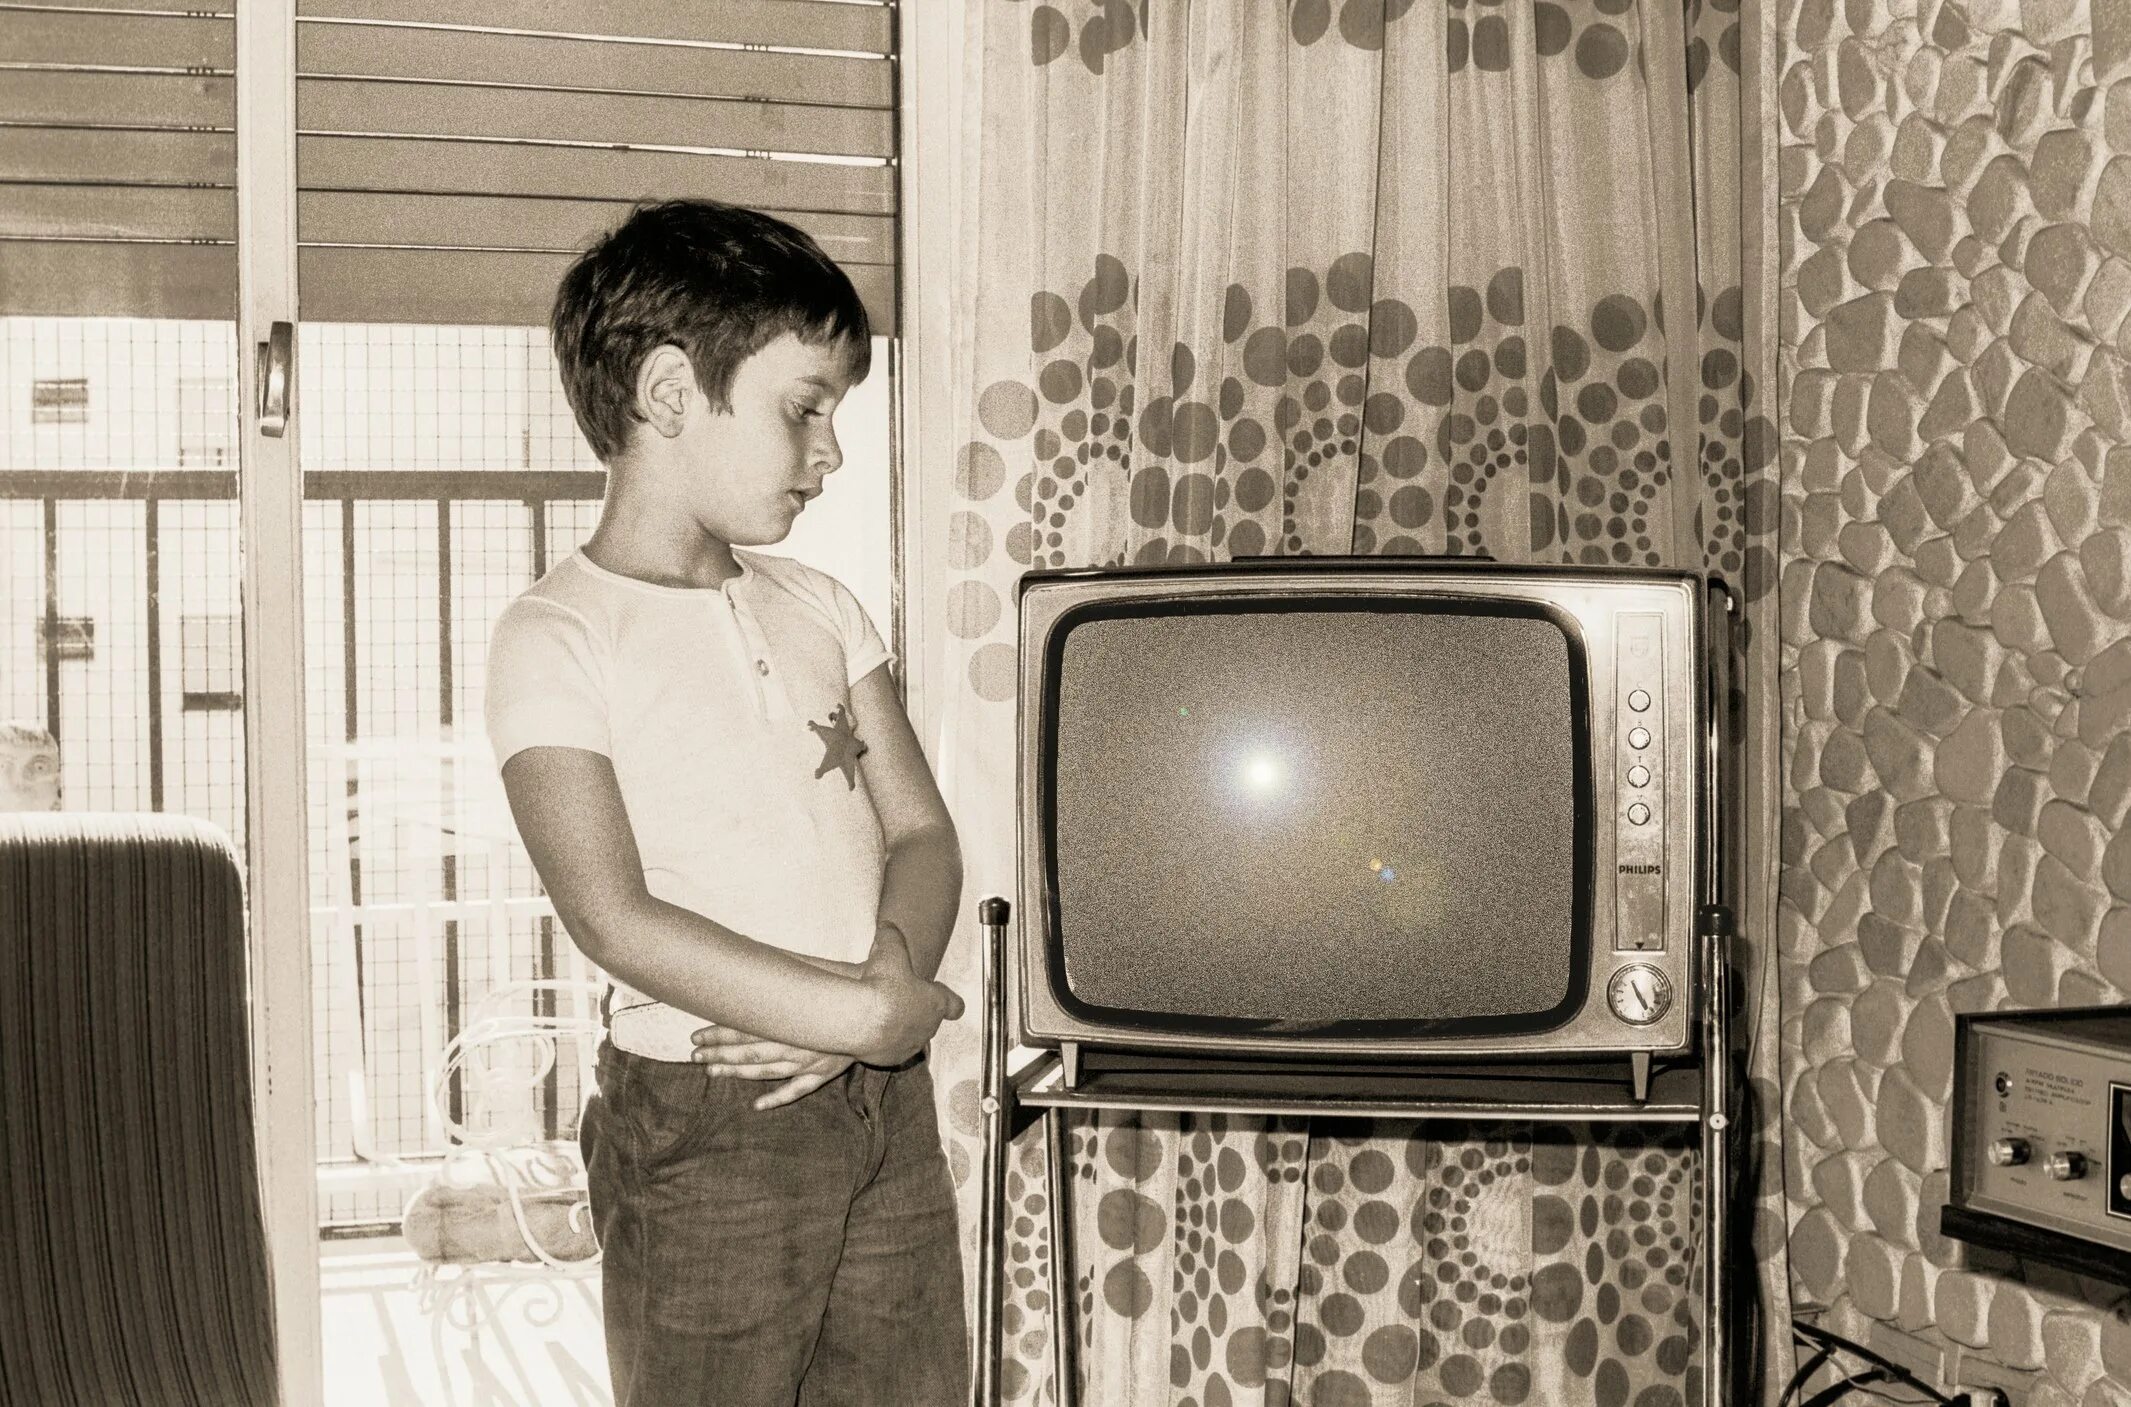 Посмотри предыдущие. Ламповый телевизор сигнал 2. Мальчик у телевизора. Мальчик старый телевизор. Транзисторный телевизор.